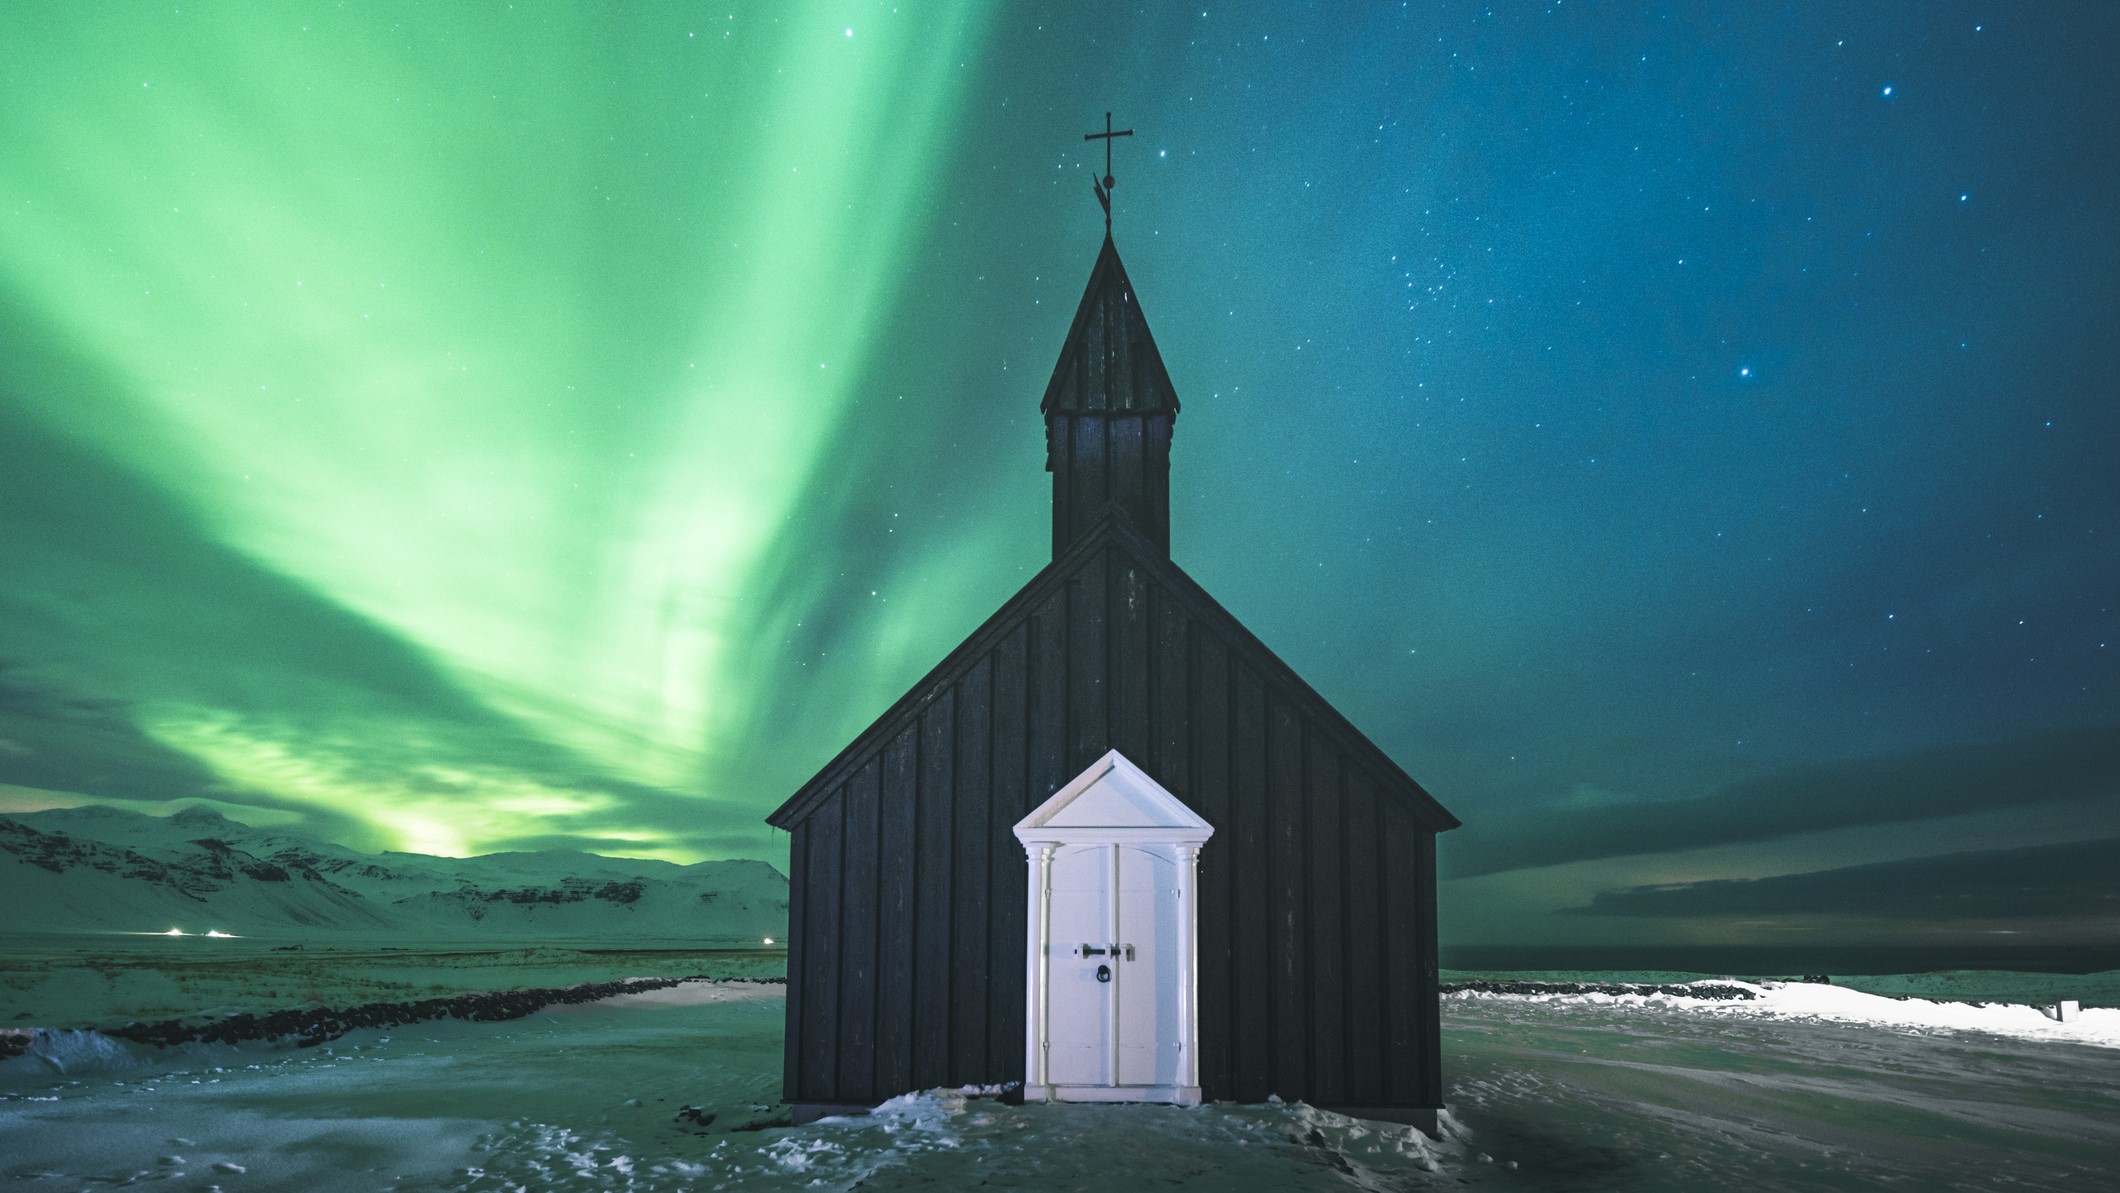 یک کلیسای سیاه زیر نورهای شمالی با رگه هایی از نور سبز که در سراسر آسمان می رقصند.